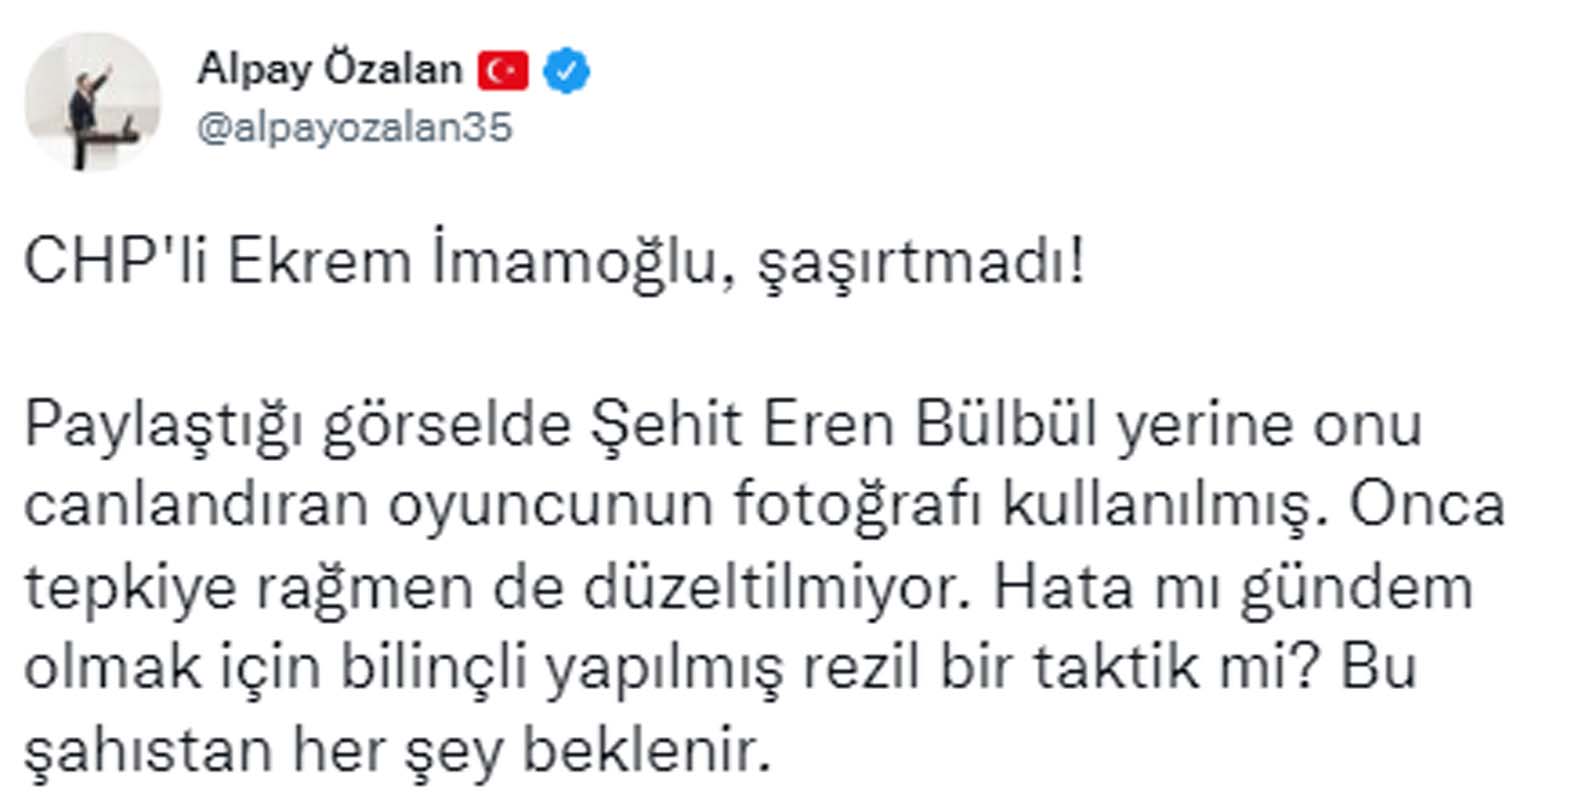 CHP'li Ekrem İmamoğlu şaşırtmadı Trabzonspor'un şampiyonluğunu kutlamak isterken rezil oldu! Eren Bülbül hatasını görenler gözlerine inanamadı!